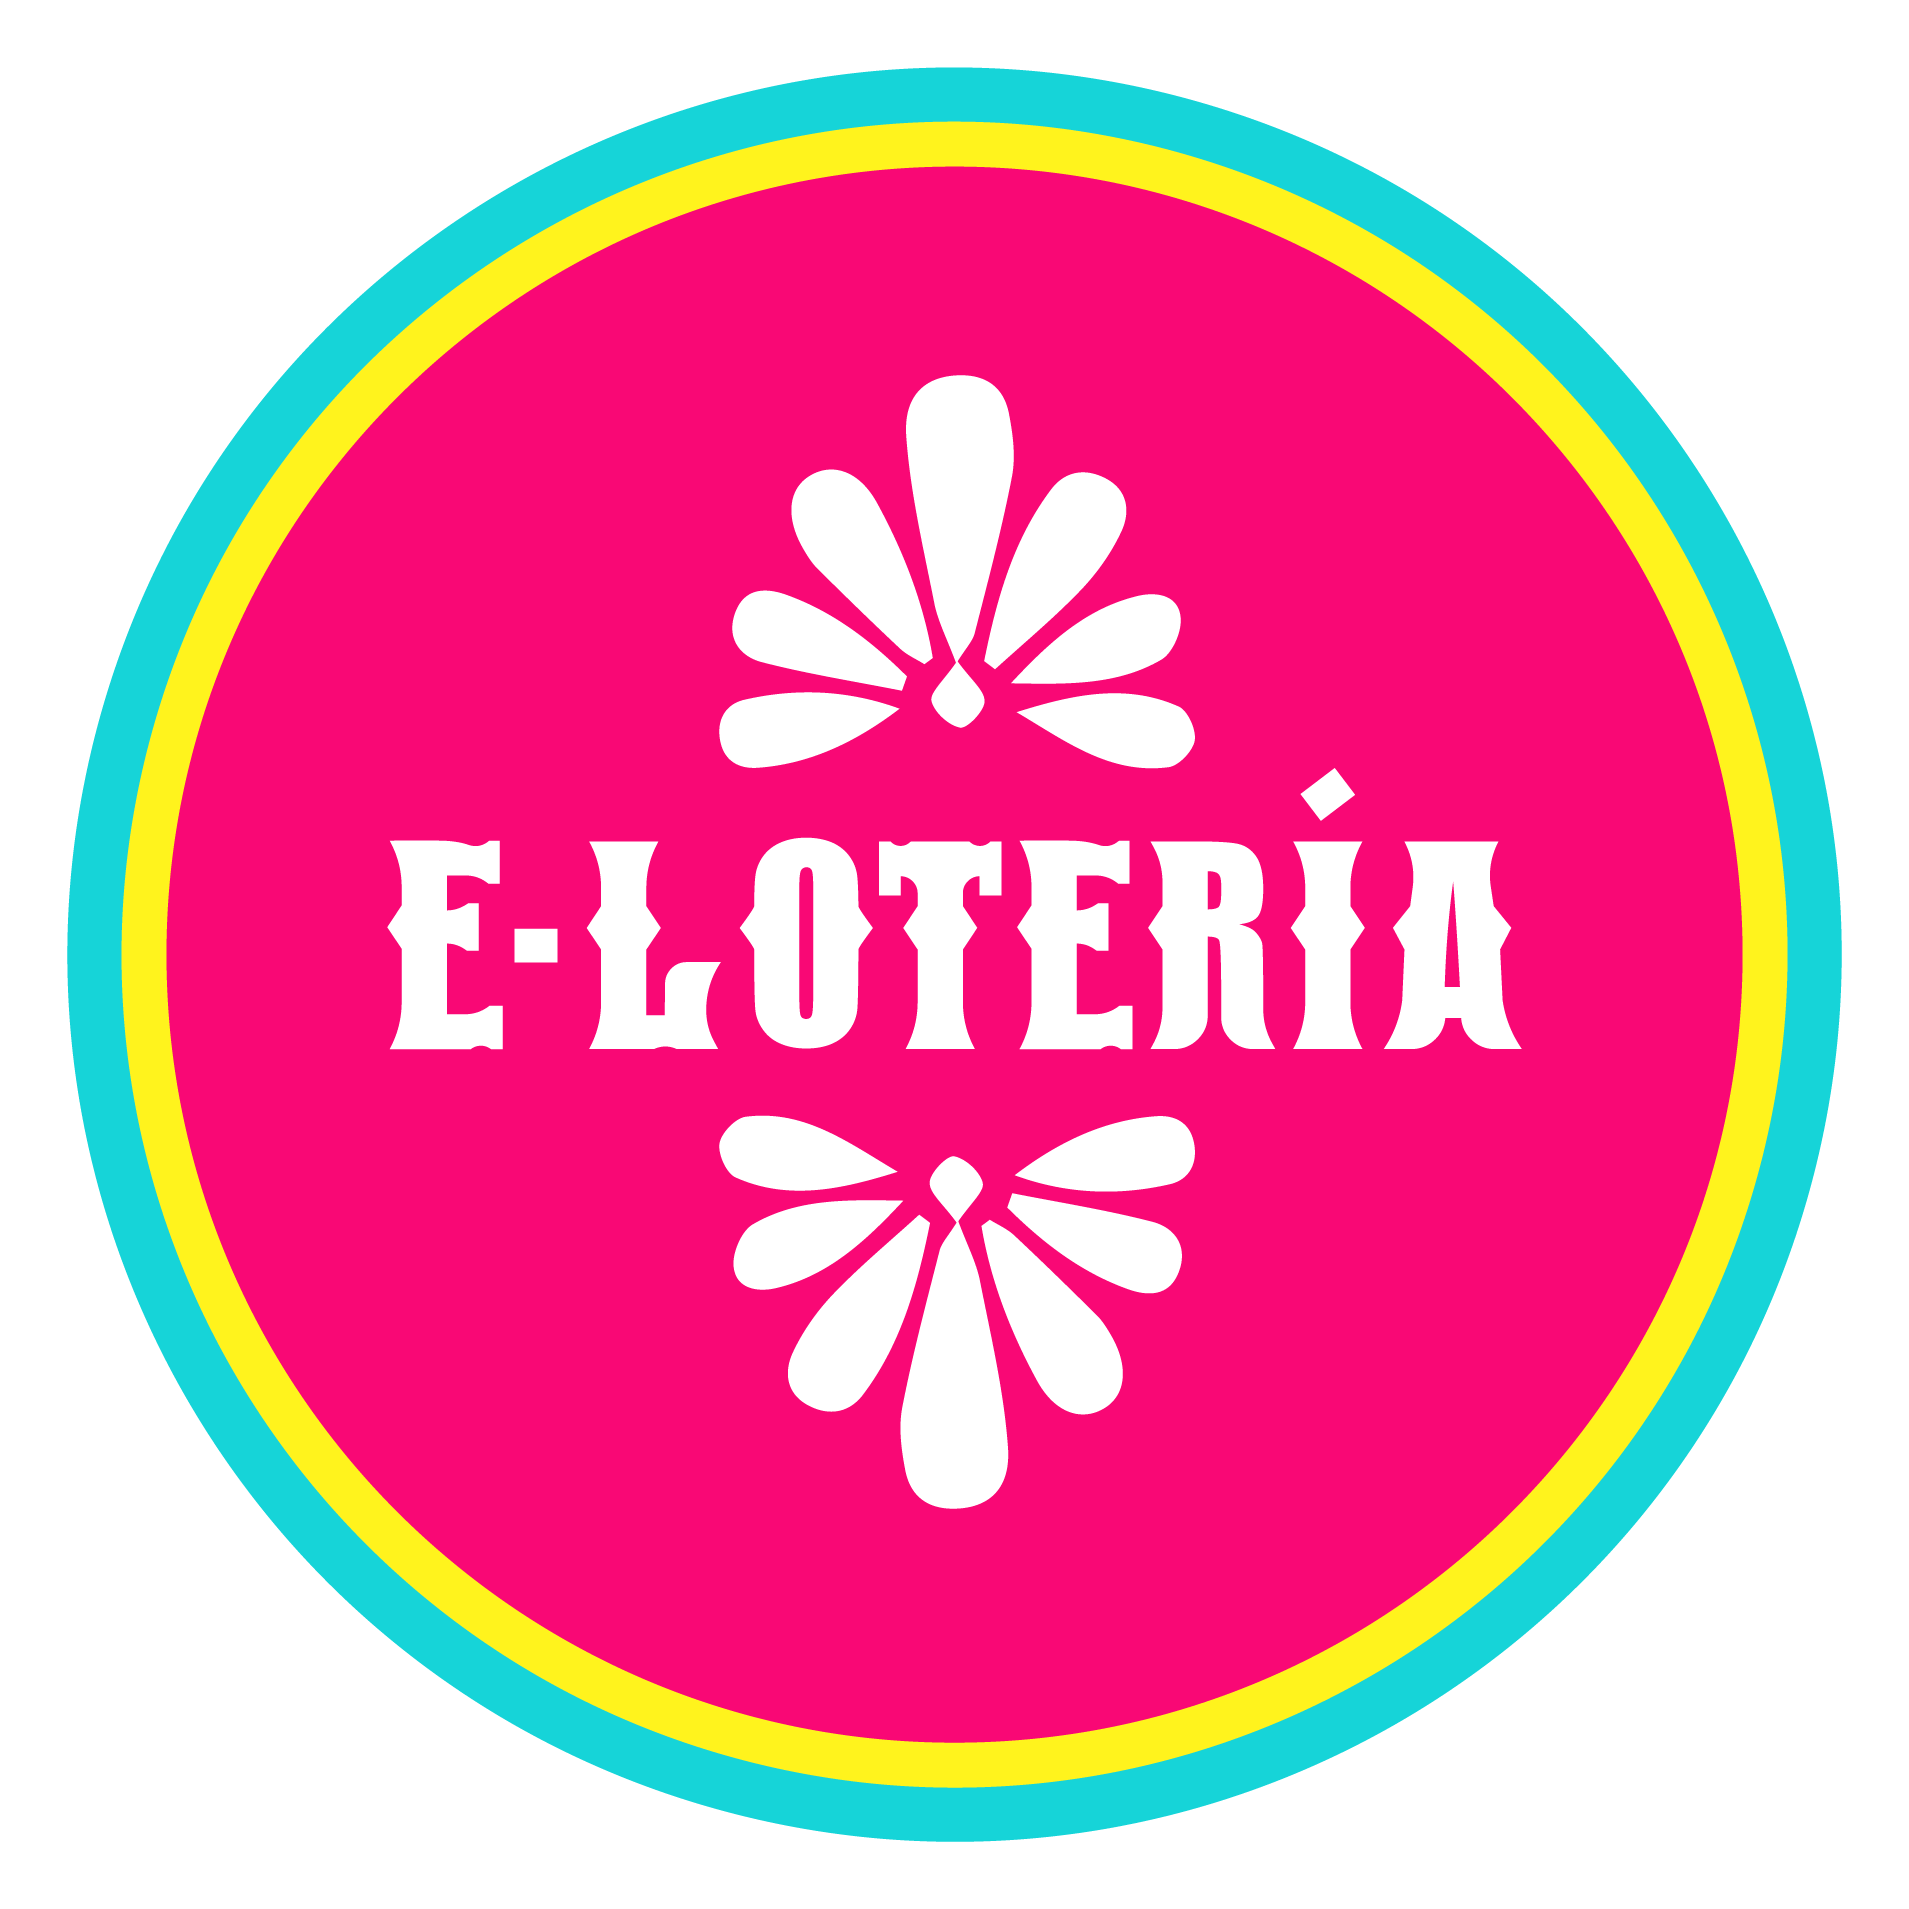 E-Loteria, LLC logo top - Homepage